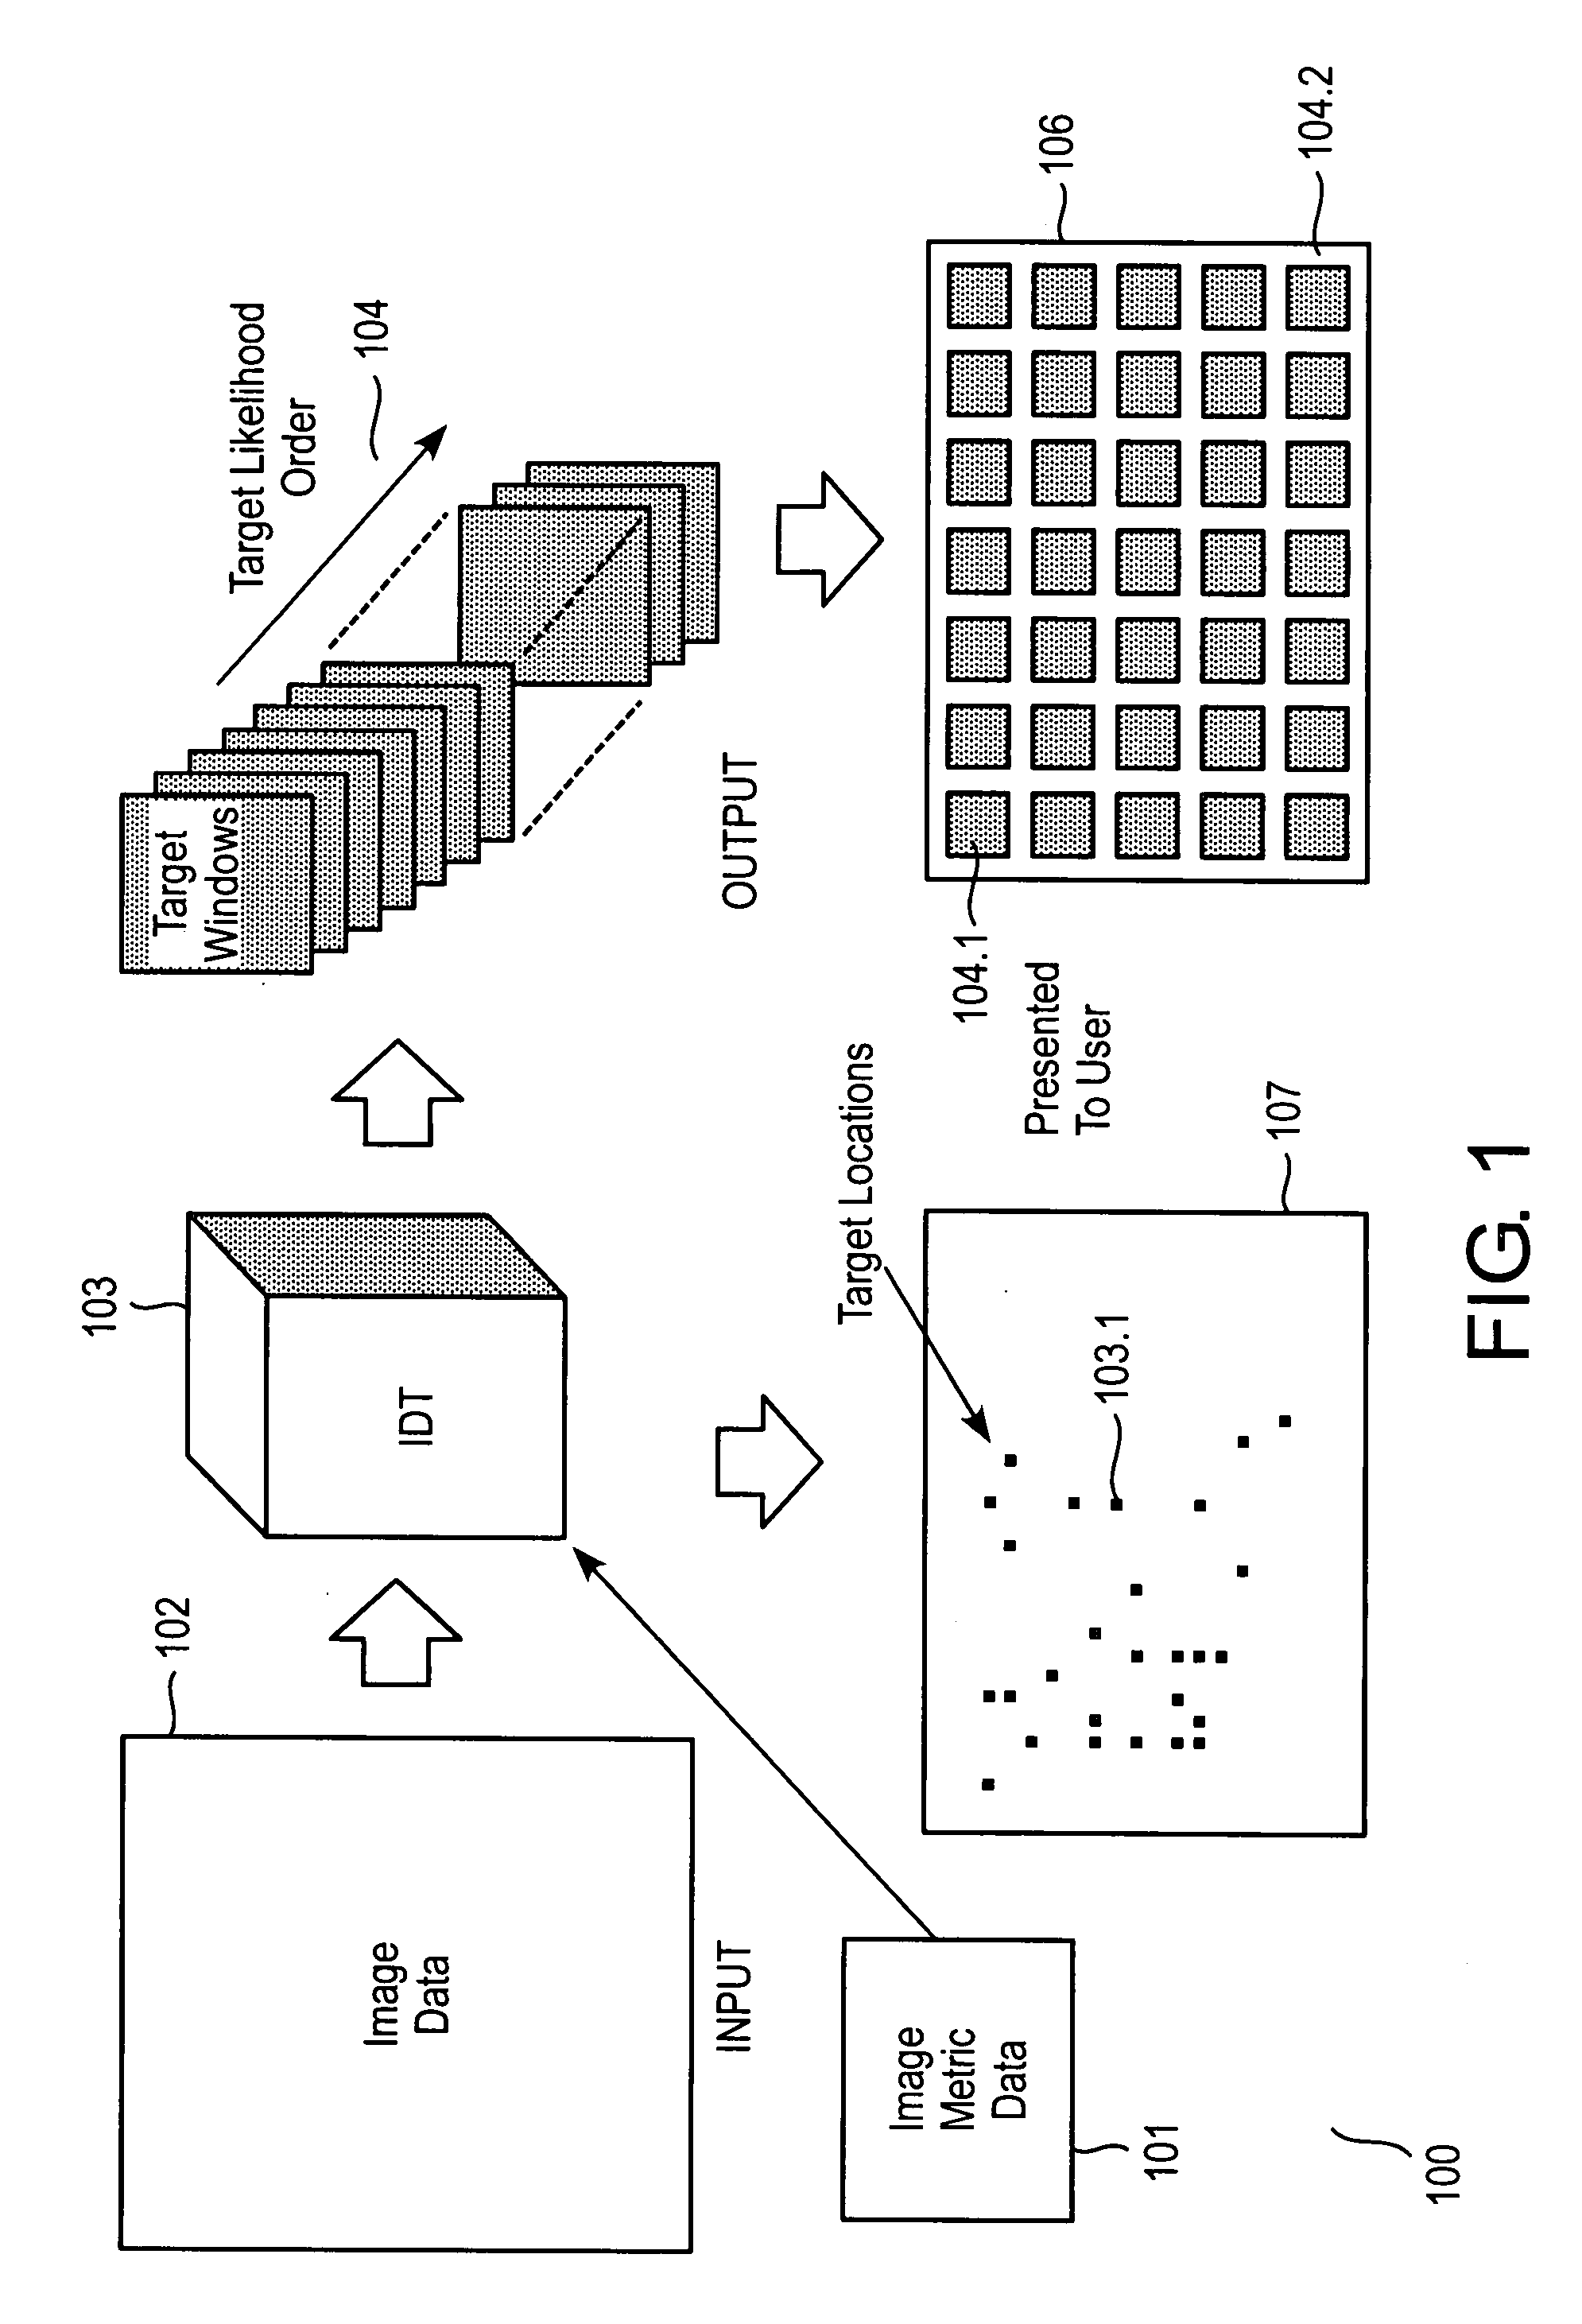 Two dimensional autonomous isotropic detection technique